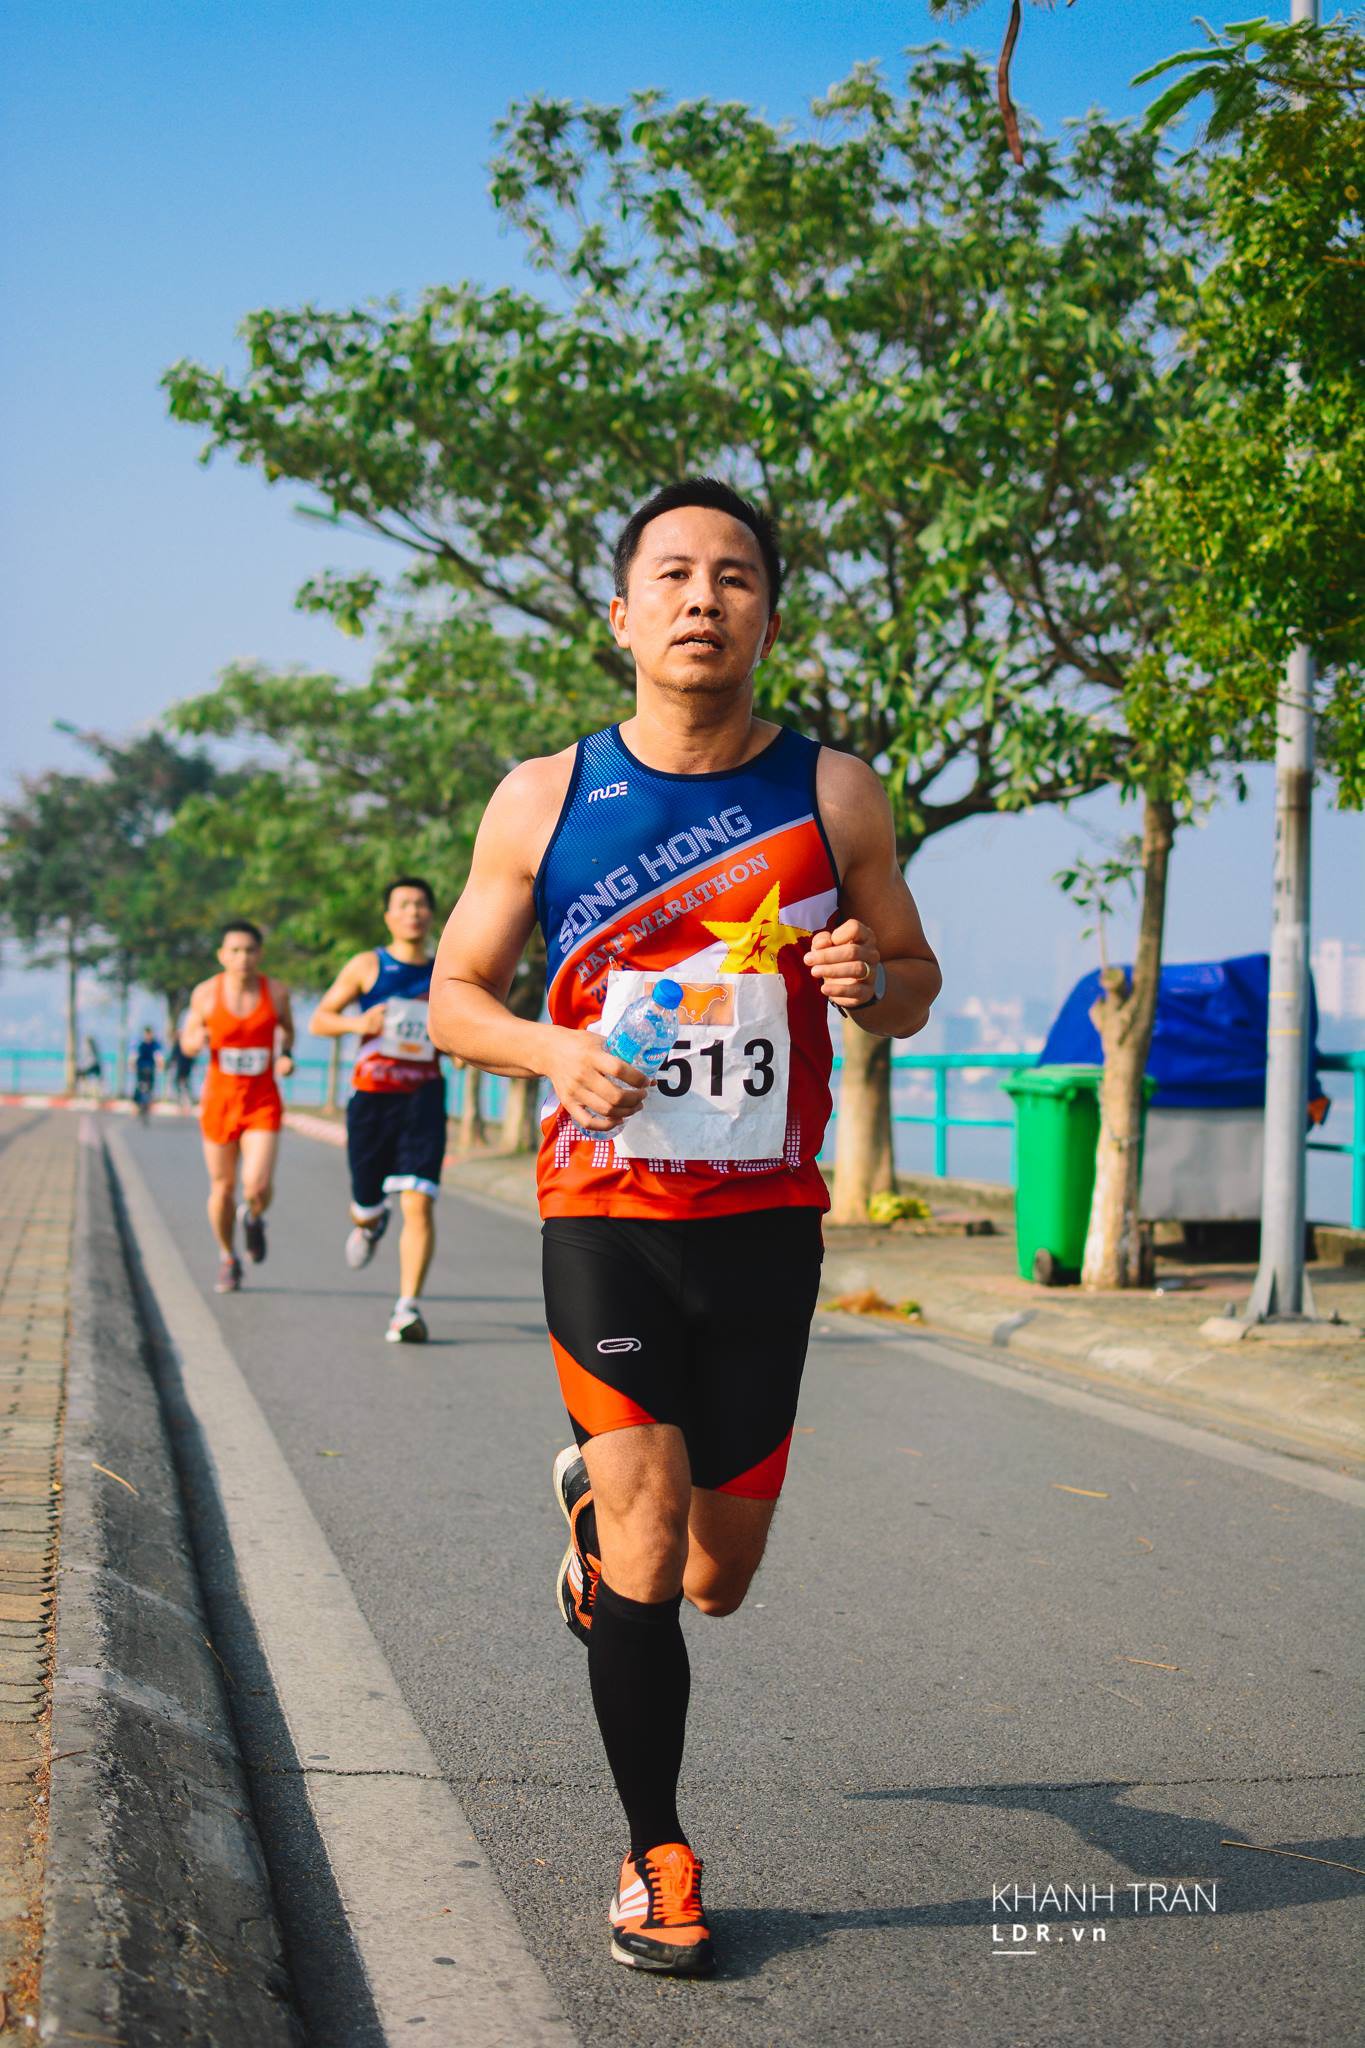 VĐV Phạm Thúc Trương Lương, người duy nhất hoàn thành Vietnam Mountain Marathon ở 4 cự ly 21km 42km 70km và 100km trong 4 năm liên tiếp